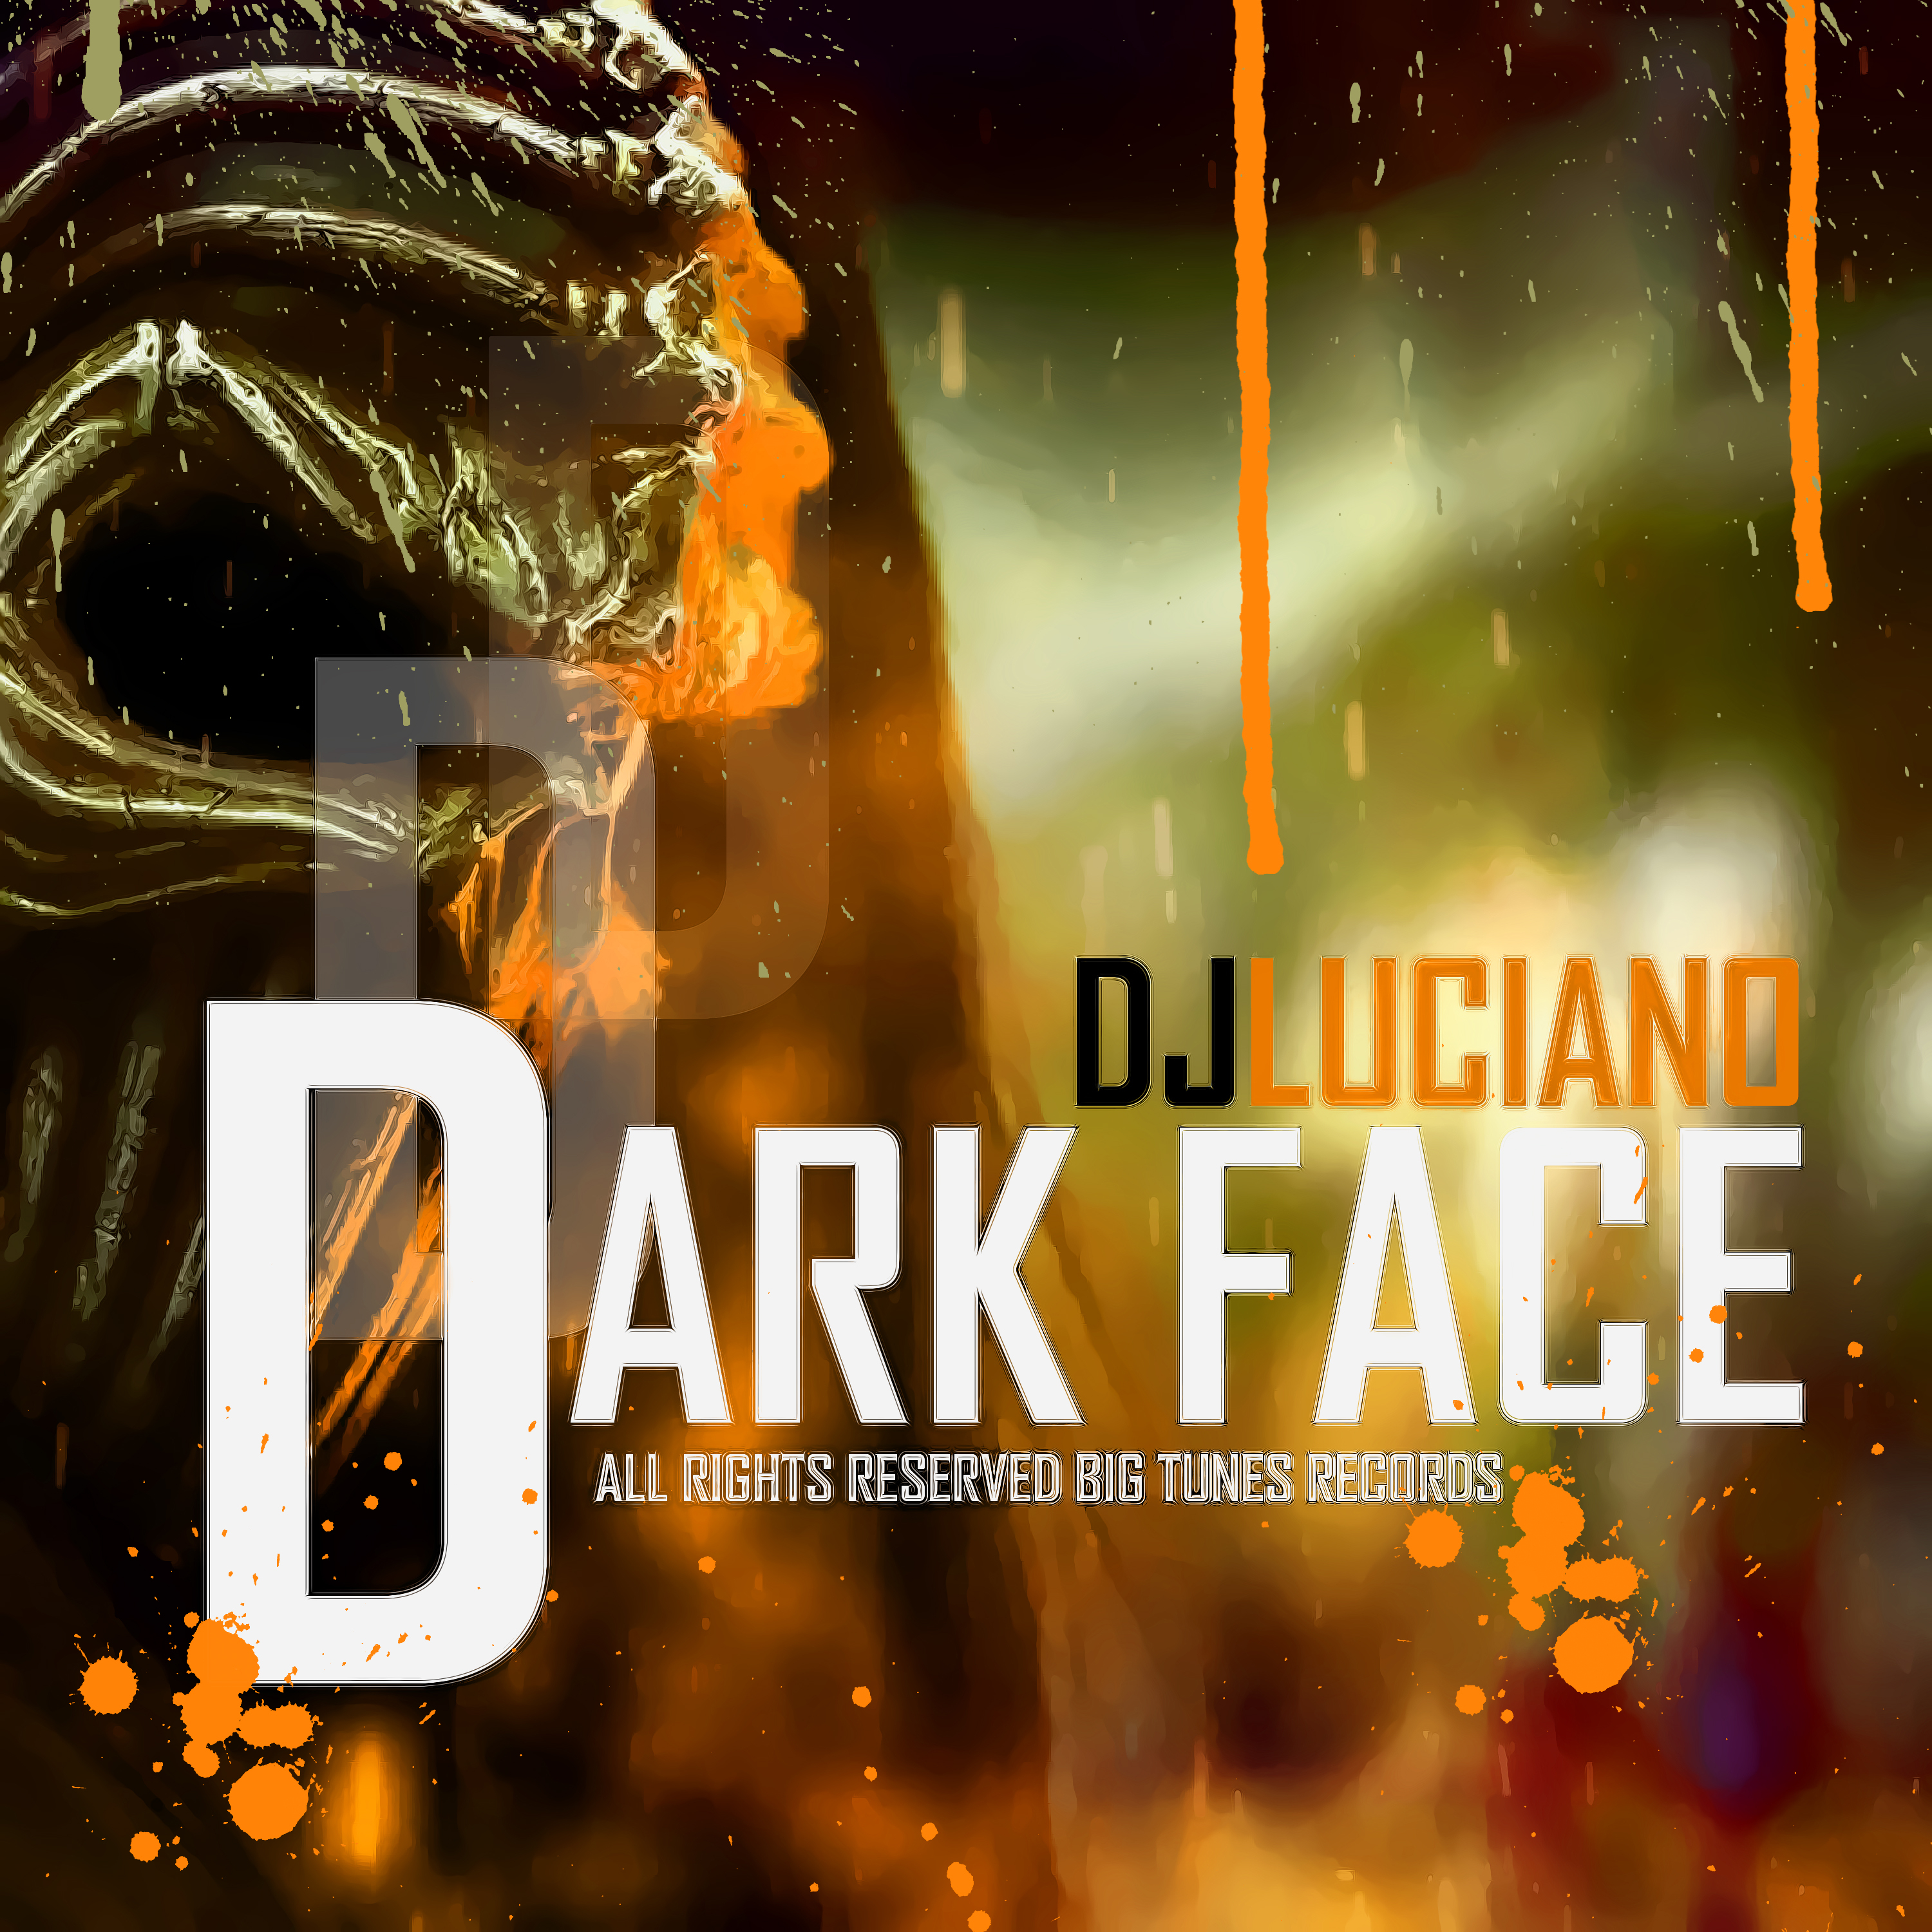 Dark Face